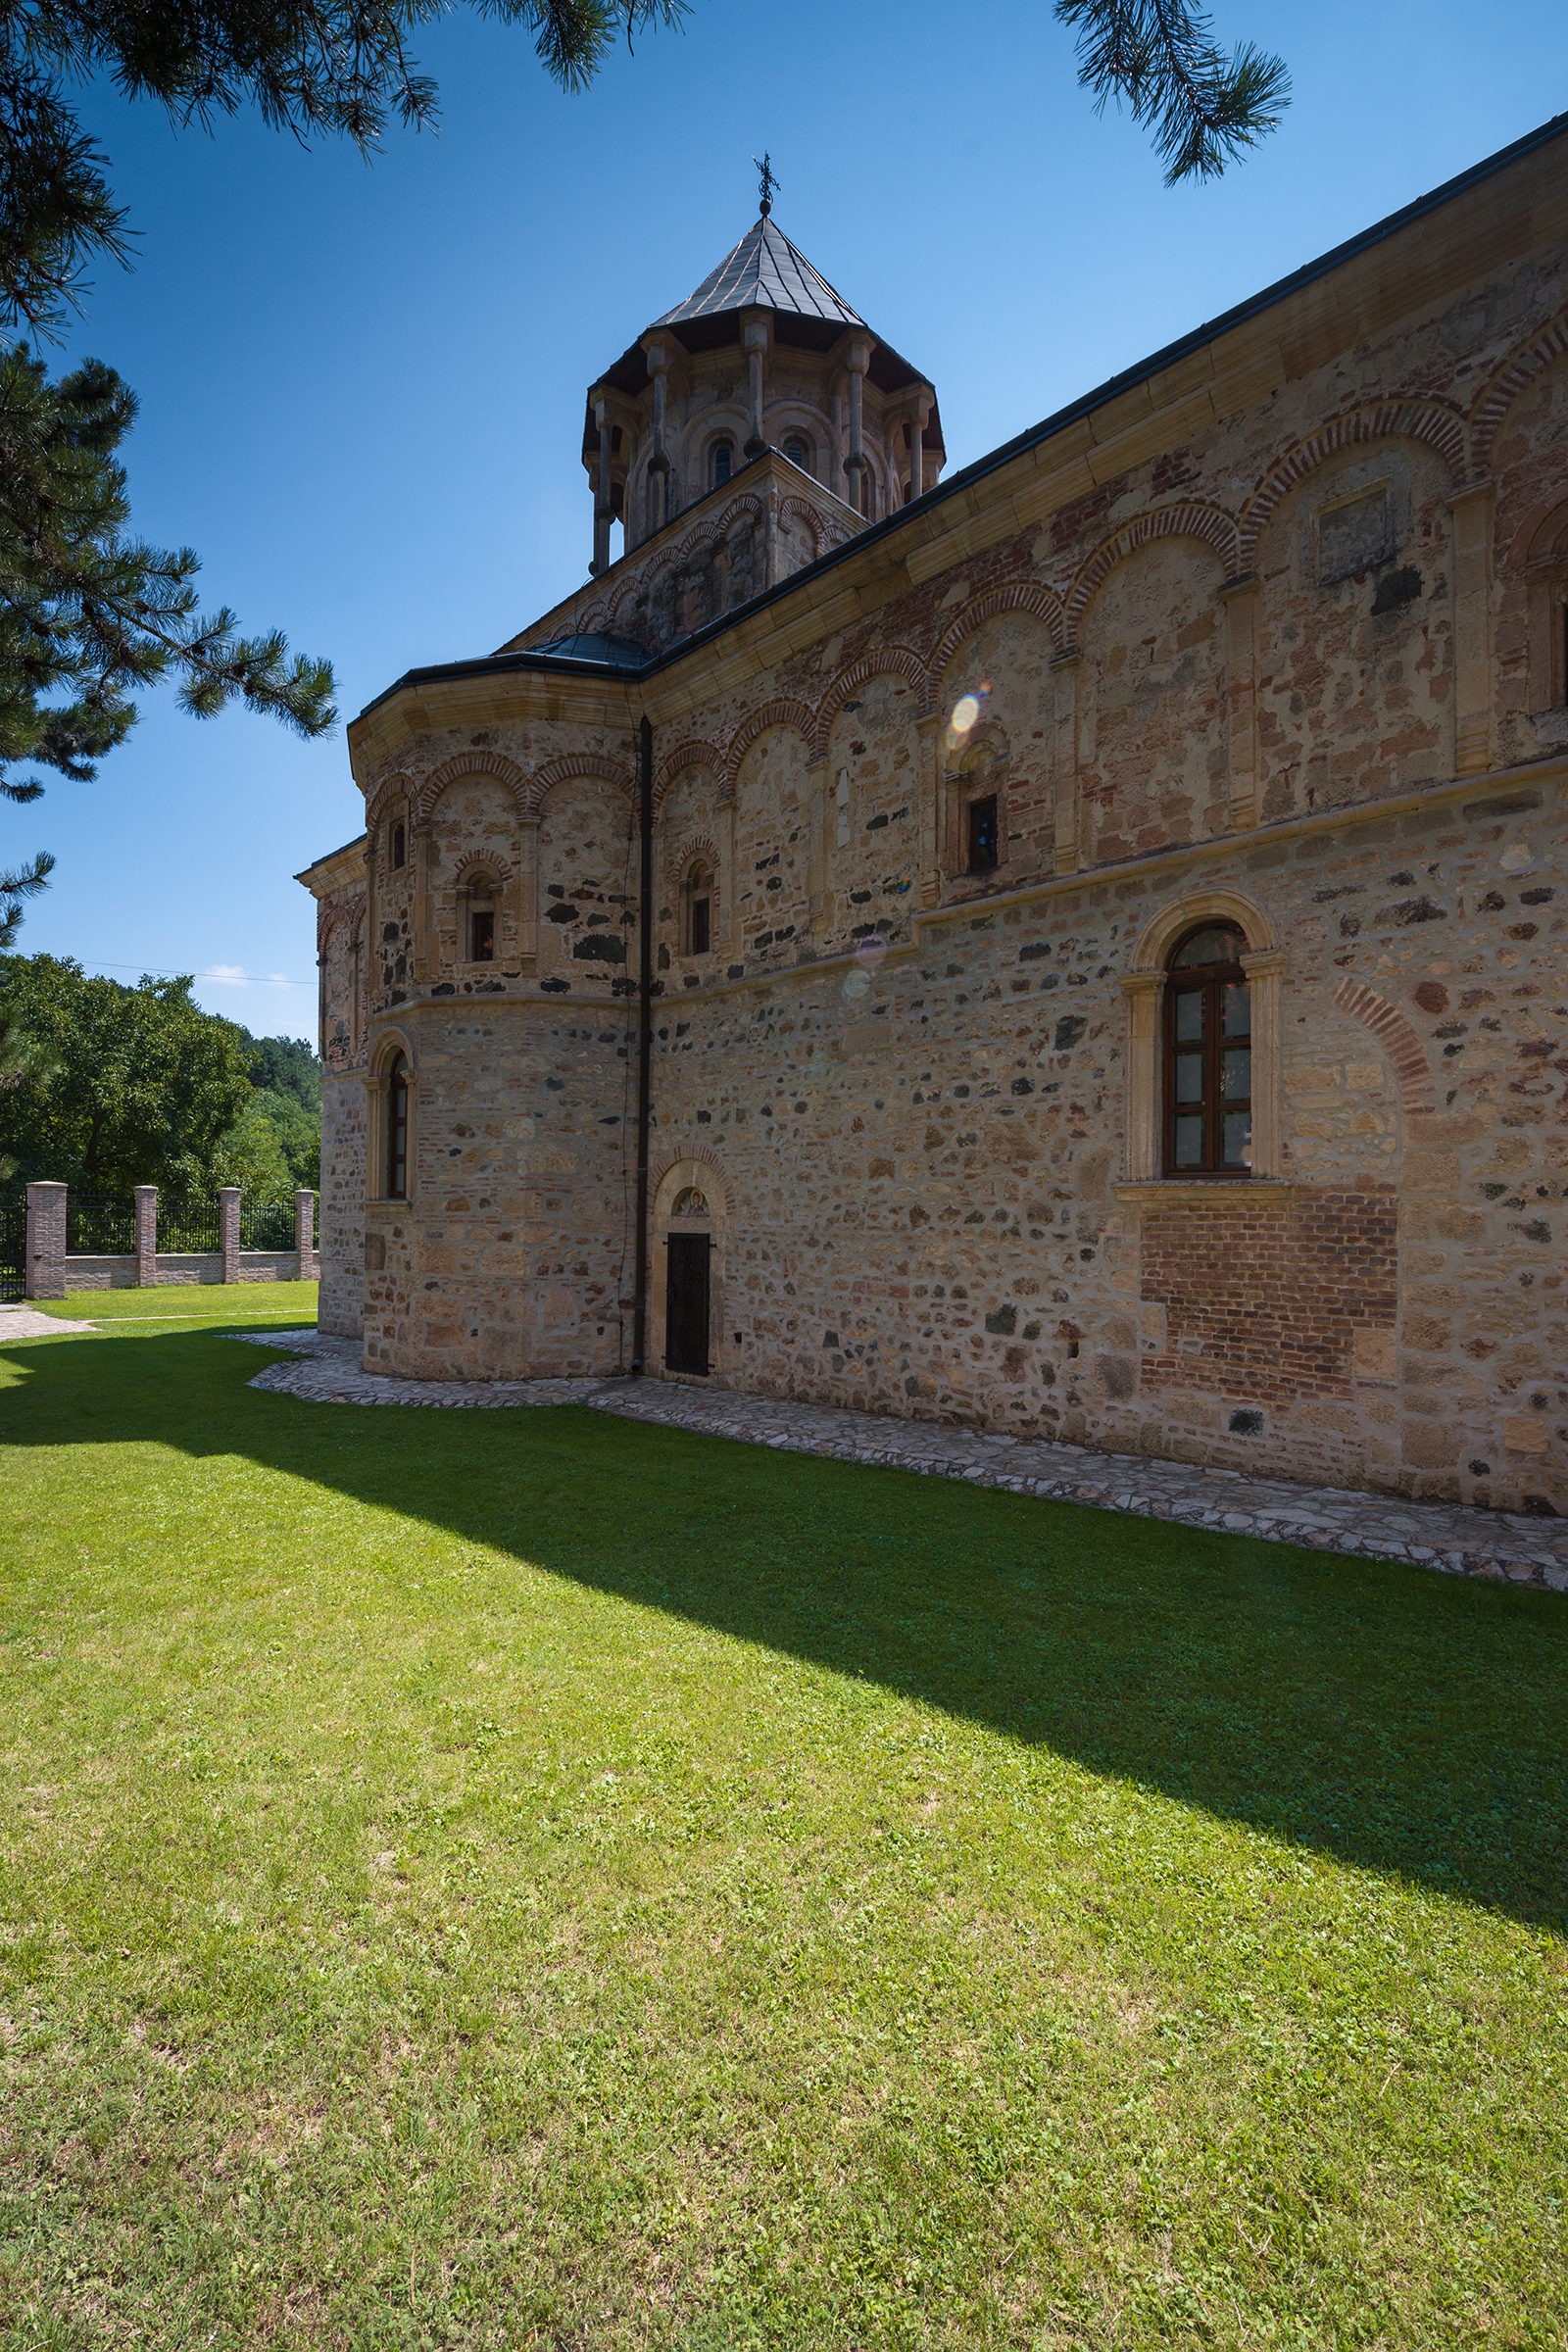 新霍普沃修道院于十五世纪中期由塞尔维亚王国君主Durad Brankovic兴建，十六世纪初期完工。